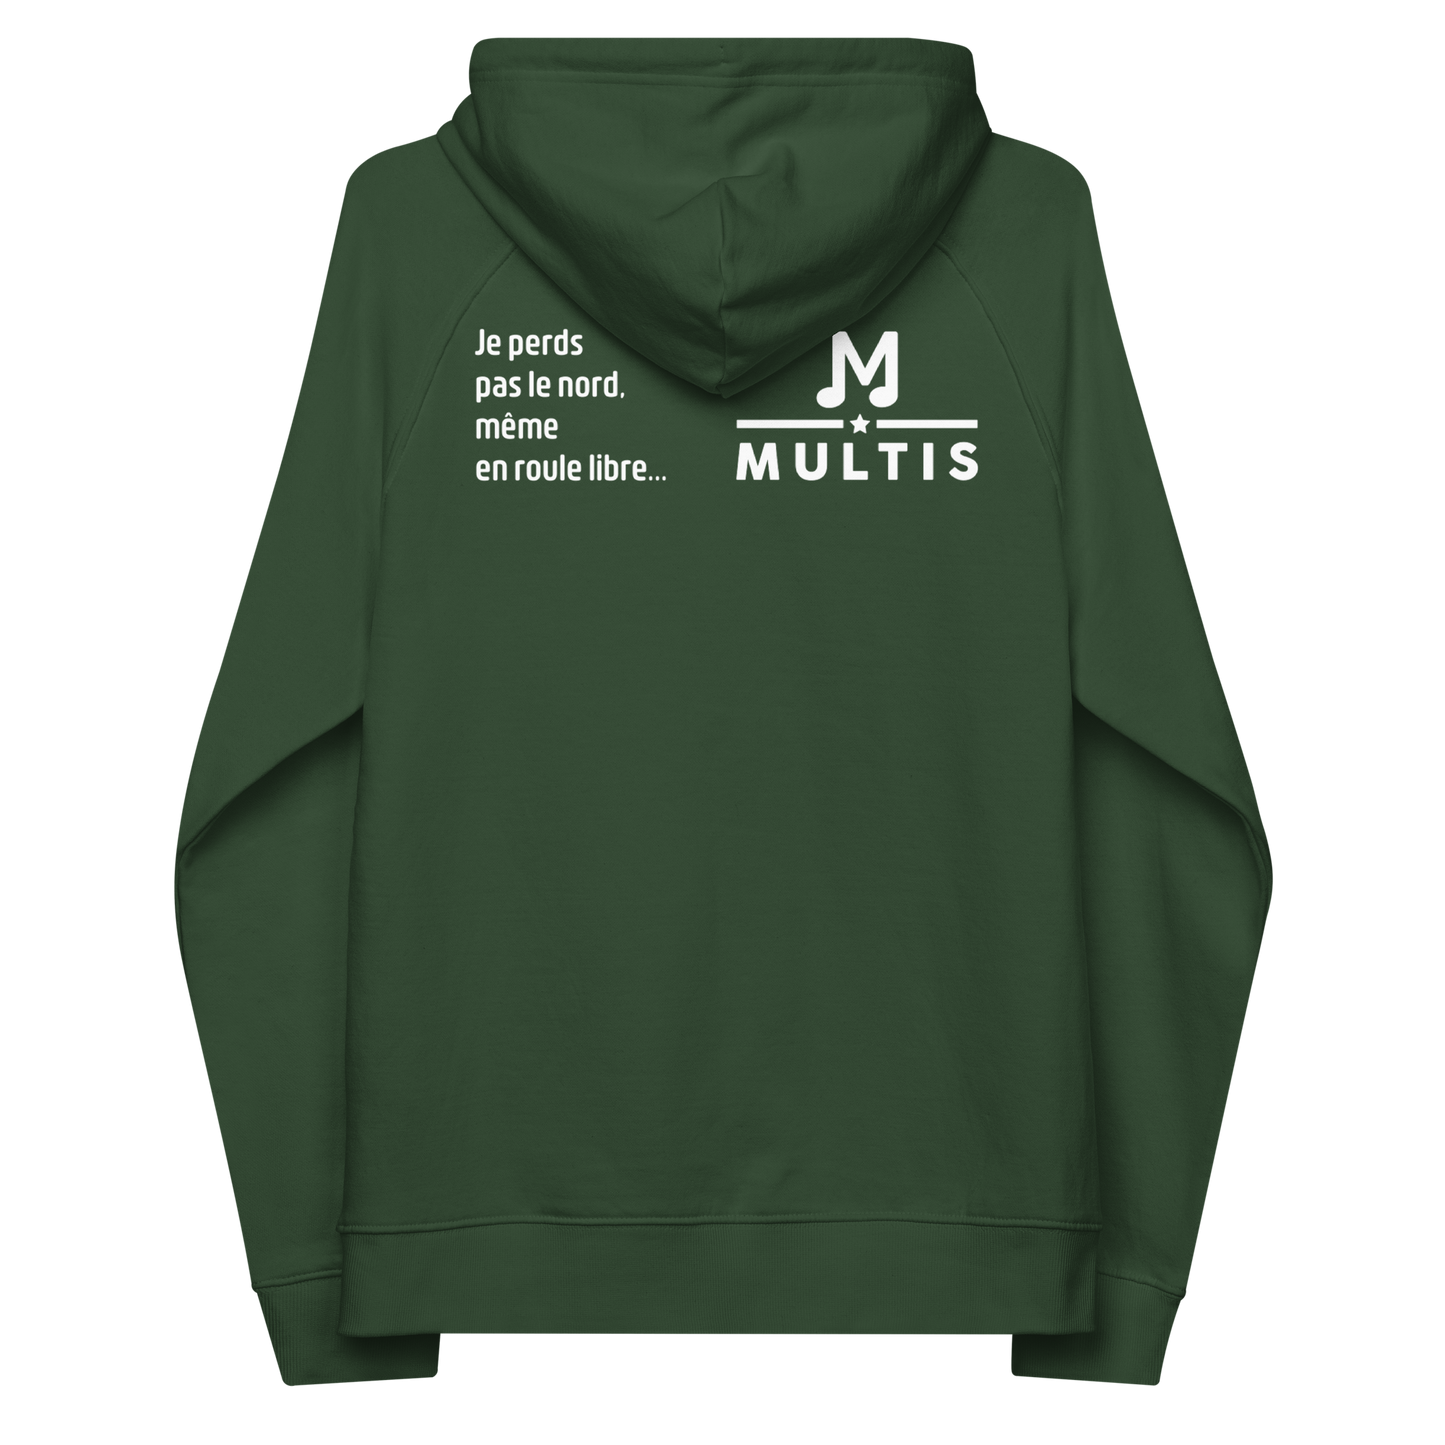 Multis - Original Green